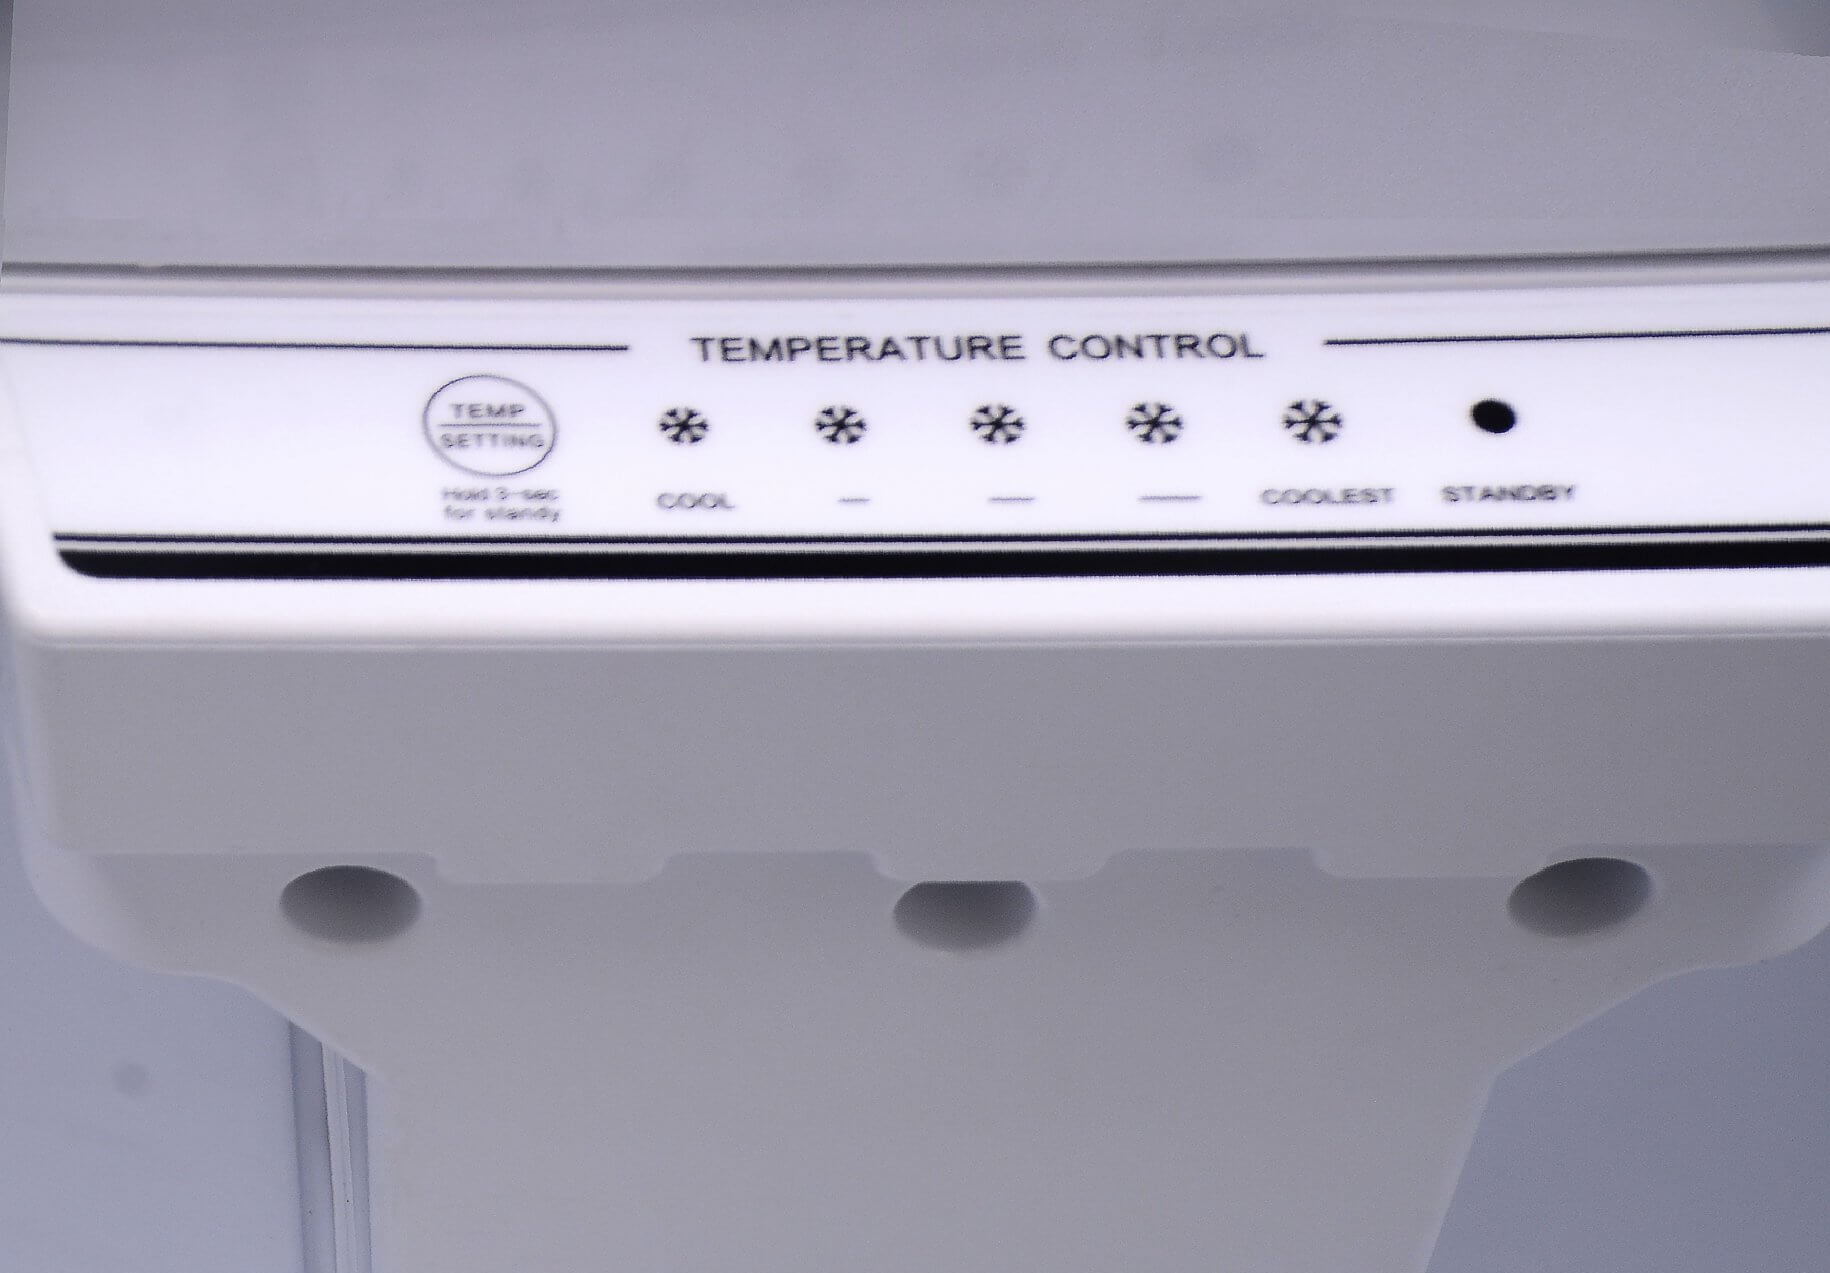 Smeta top freezer refrigerator _Temperature control